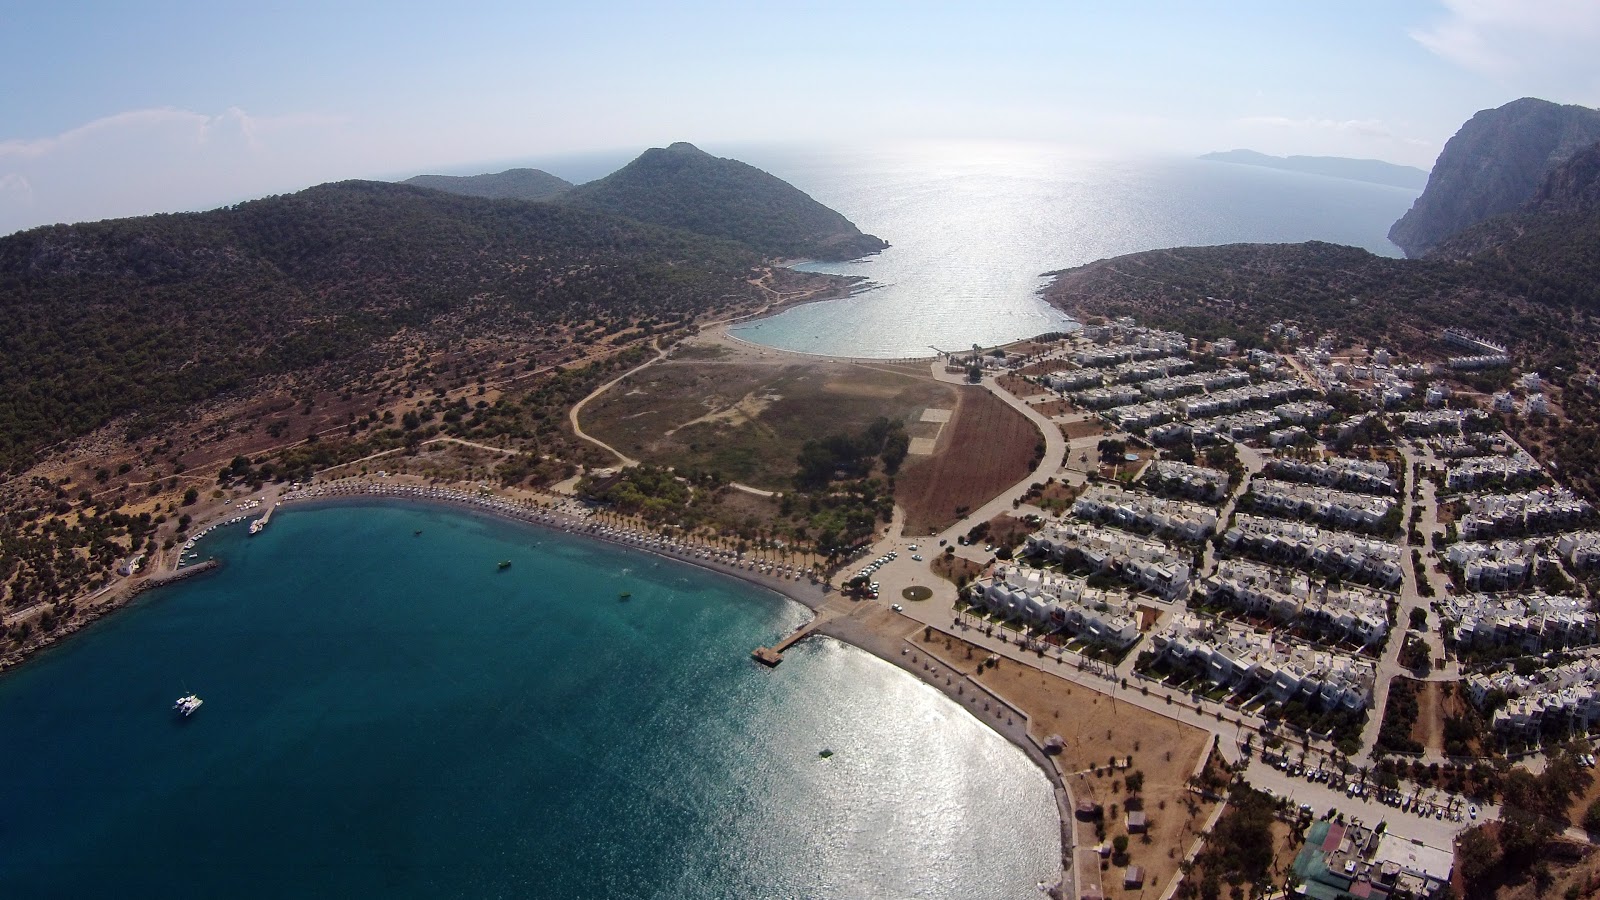 Photo of Tisan beach with spacious bay